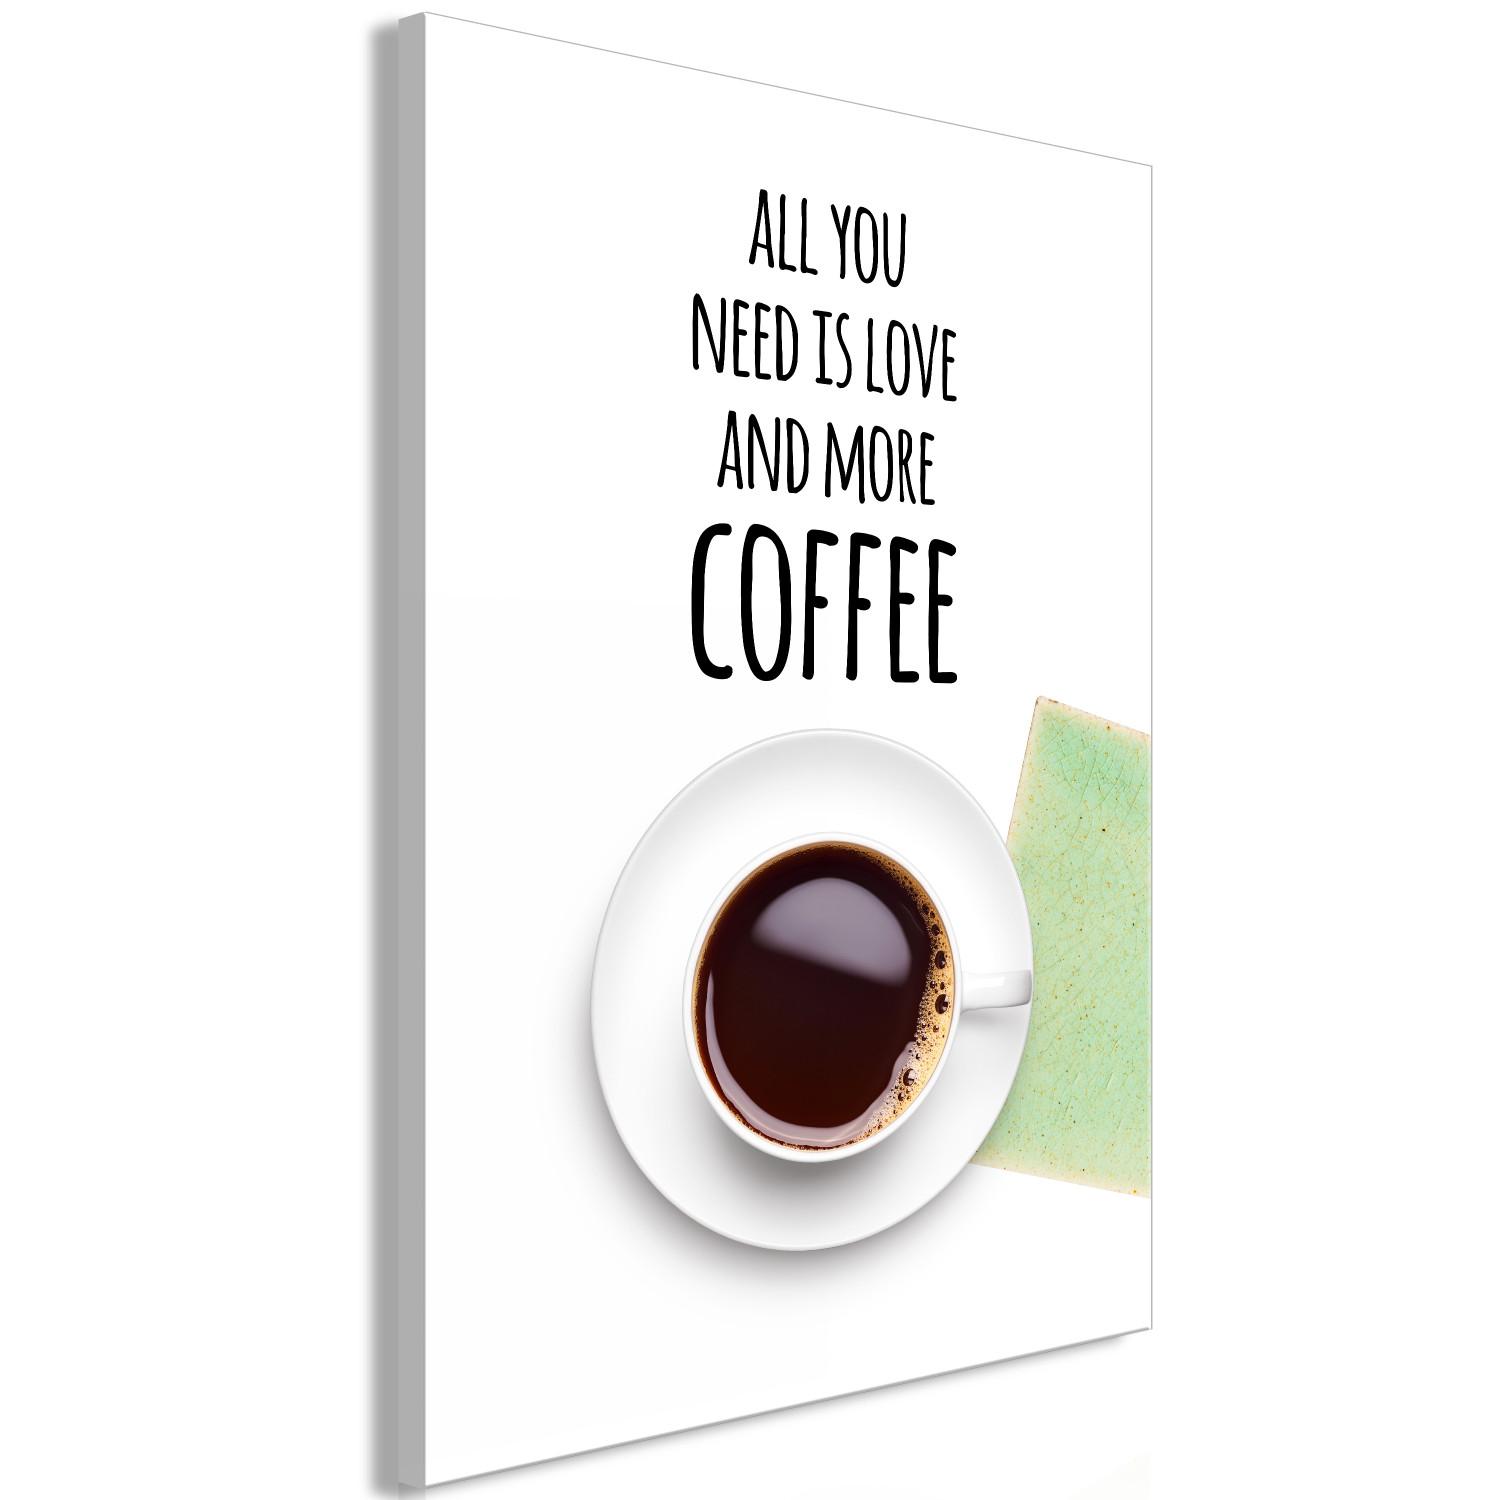 Cuadro Se sirve café - en inglés dice All You Need Is .. con una taza de café